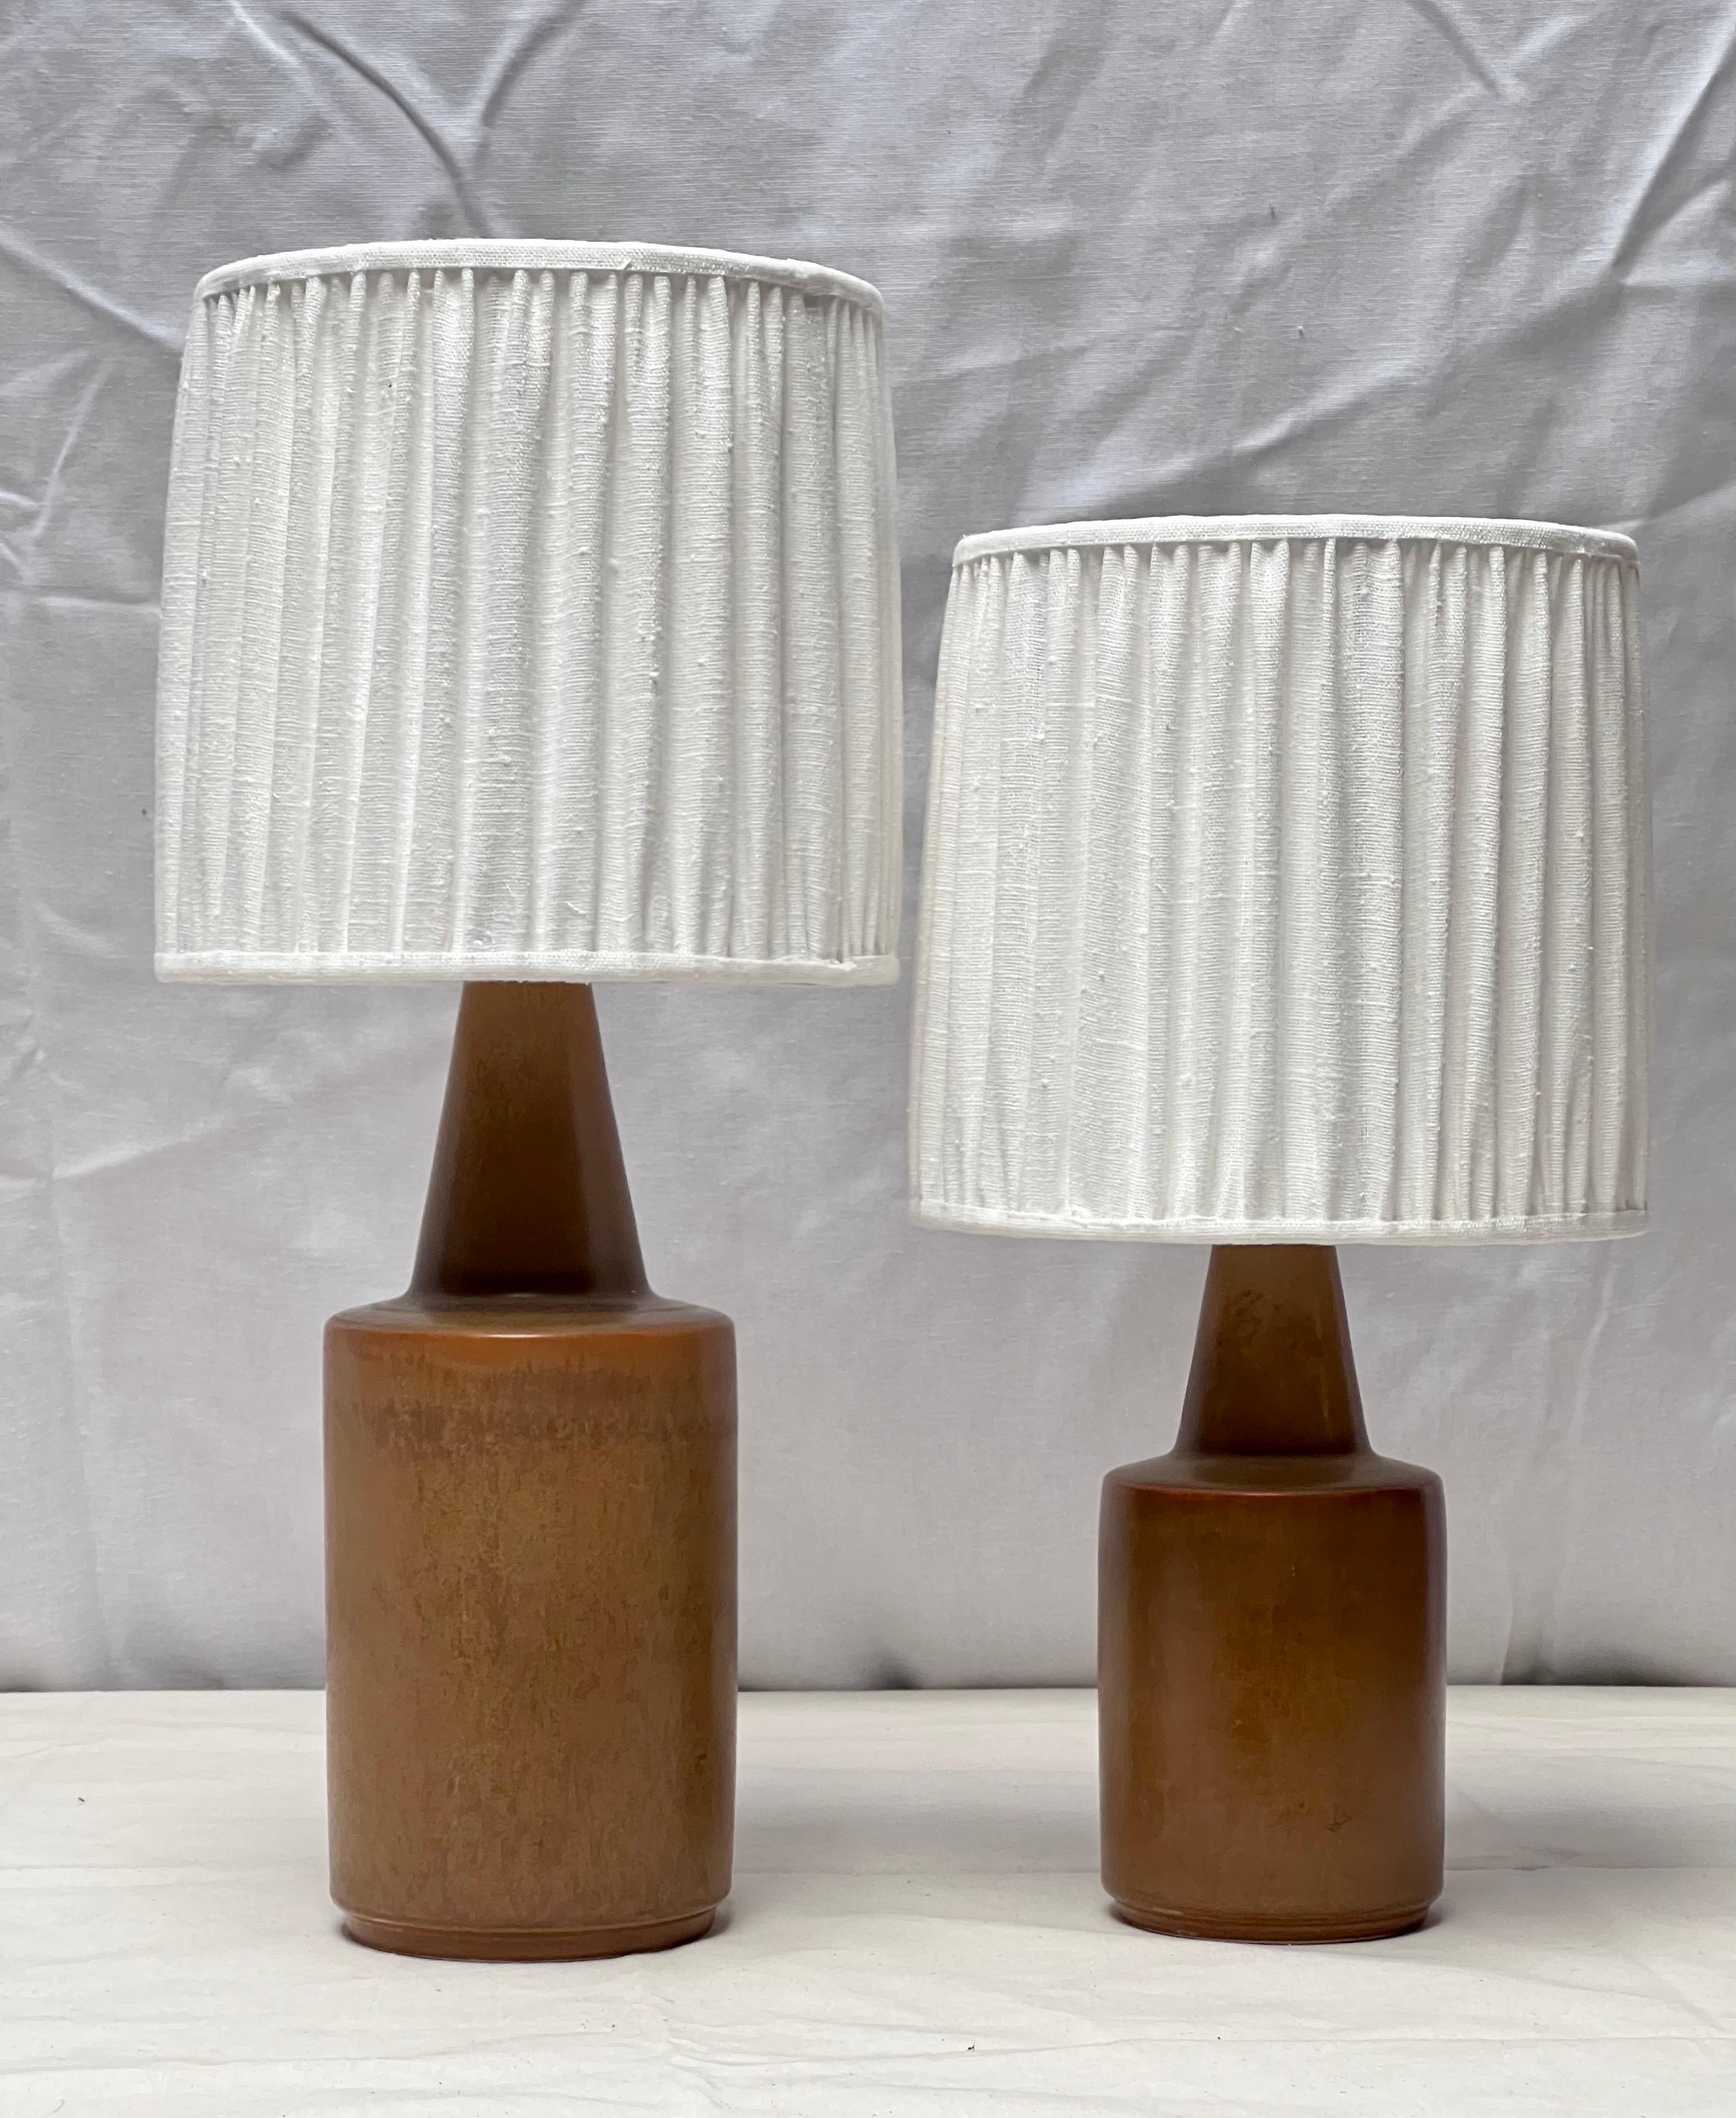 Deux lampes de table en céramique de Søholm faites d'argile avec différentes nuances de brun / orange. Il s'agit du même modèle avec une hauteur différente.  Nous avons remplacé les abat-jours par de nouveaux en lin belge fait main, ainsi que tous